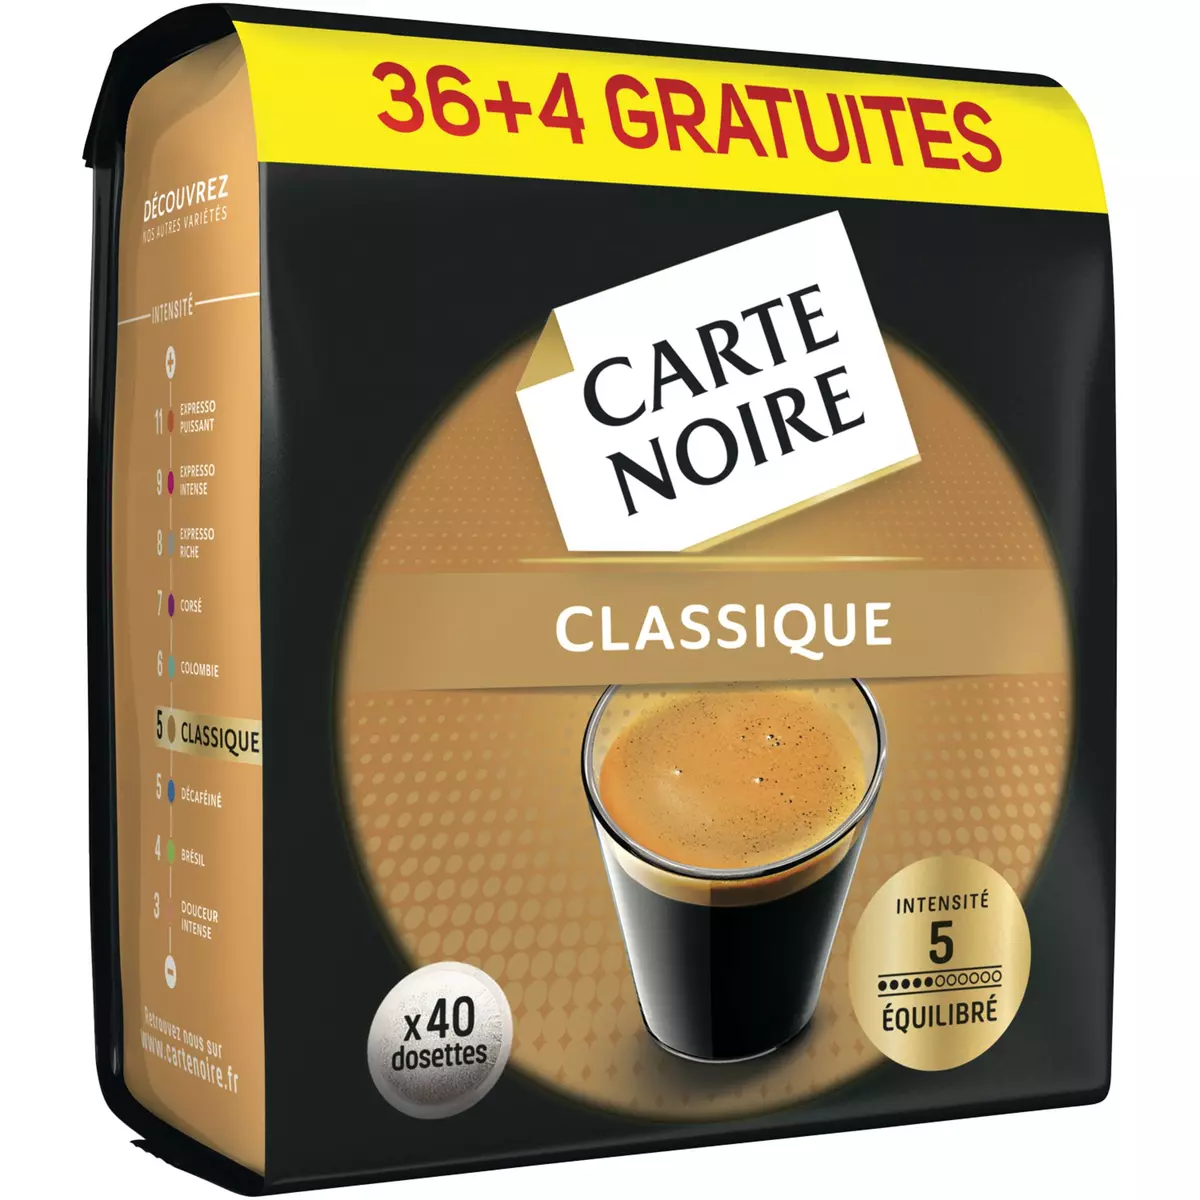 CARTE NOIRE Carte Noire classic n°5 dosette x36 +4offertes 280g